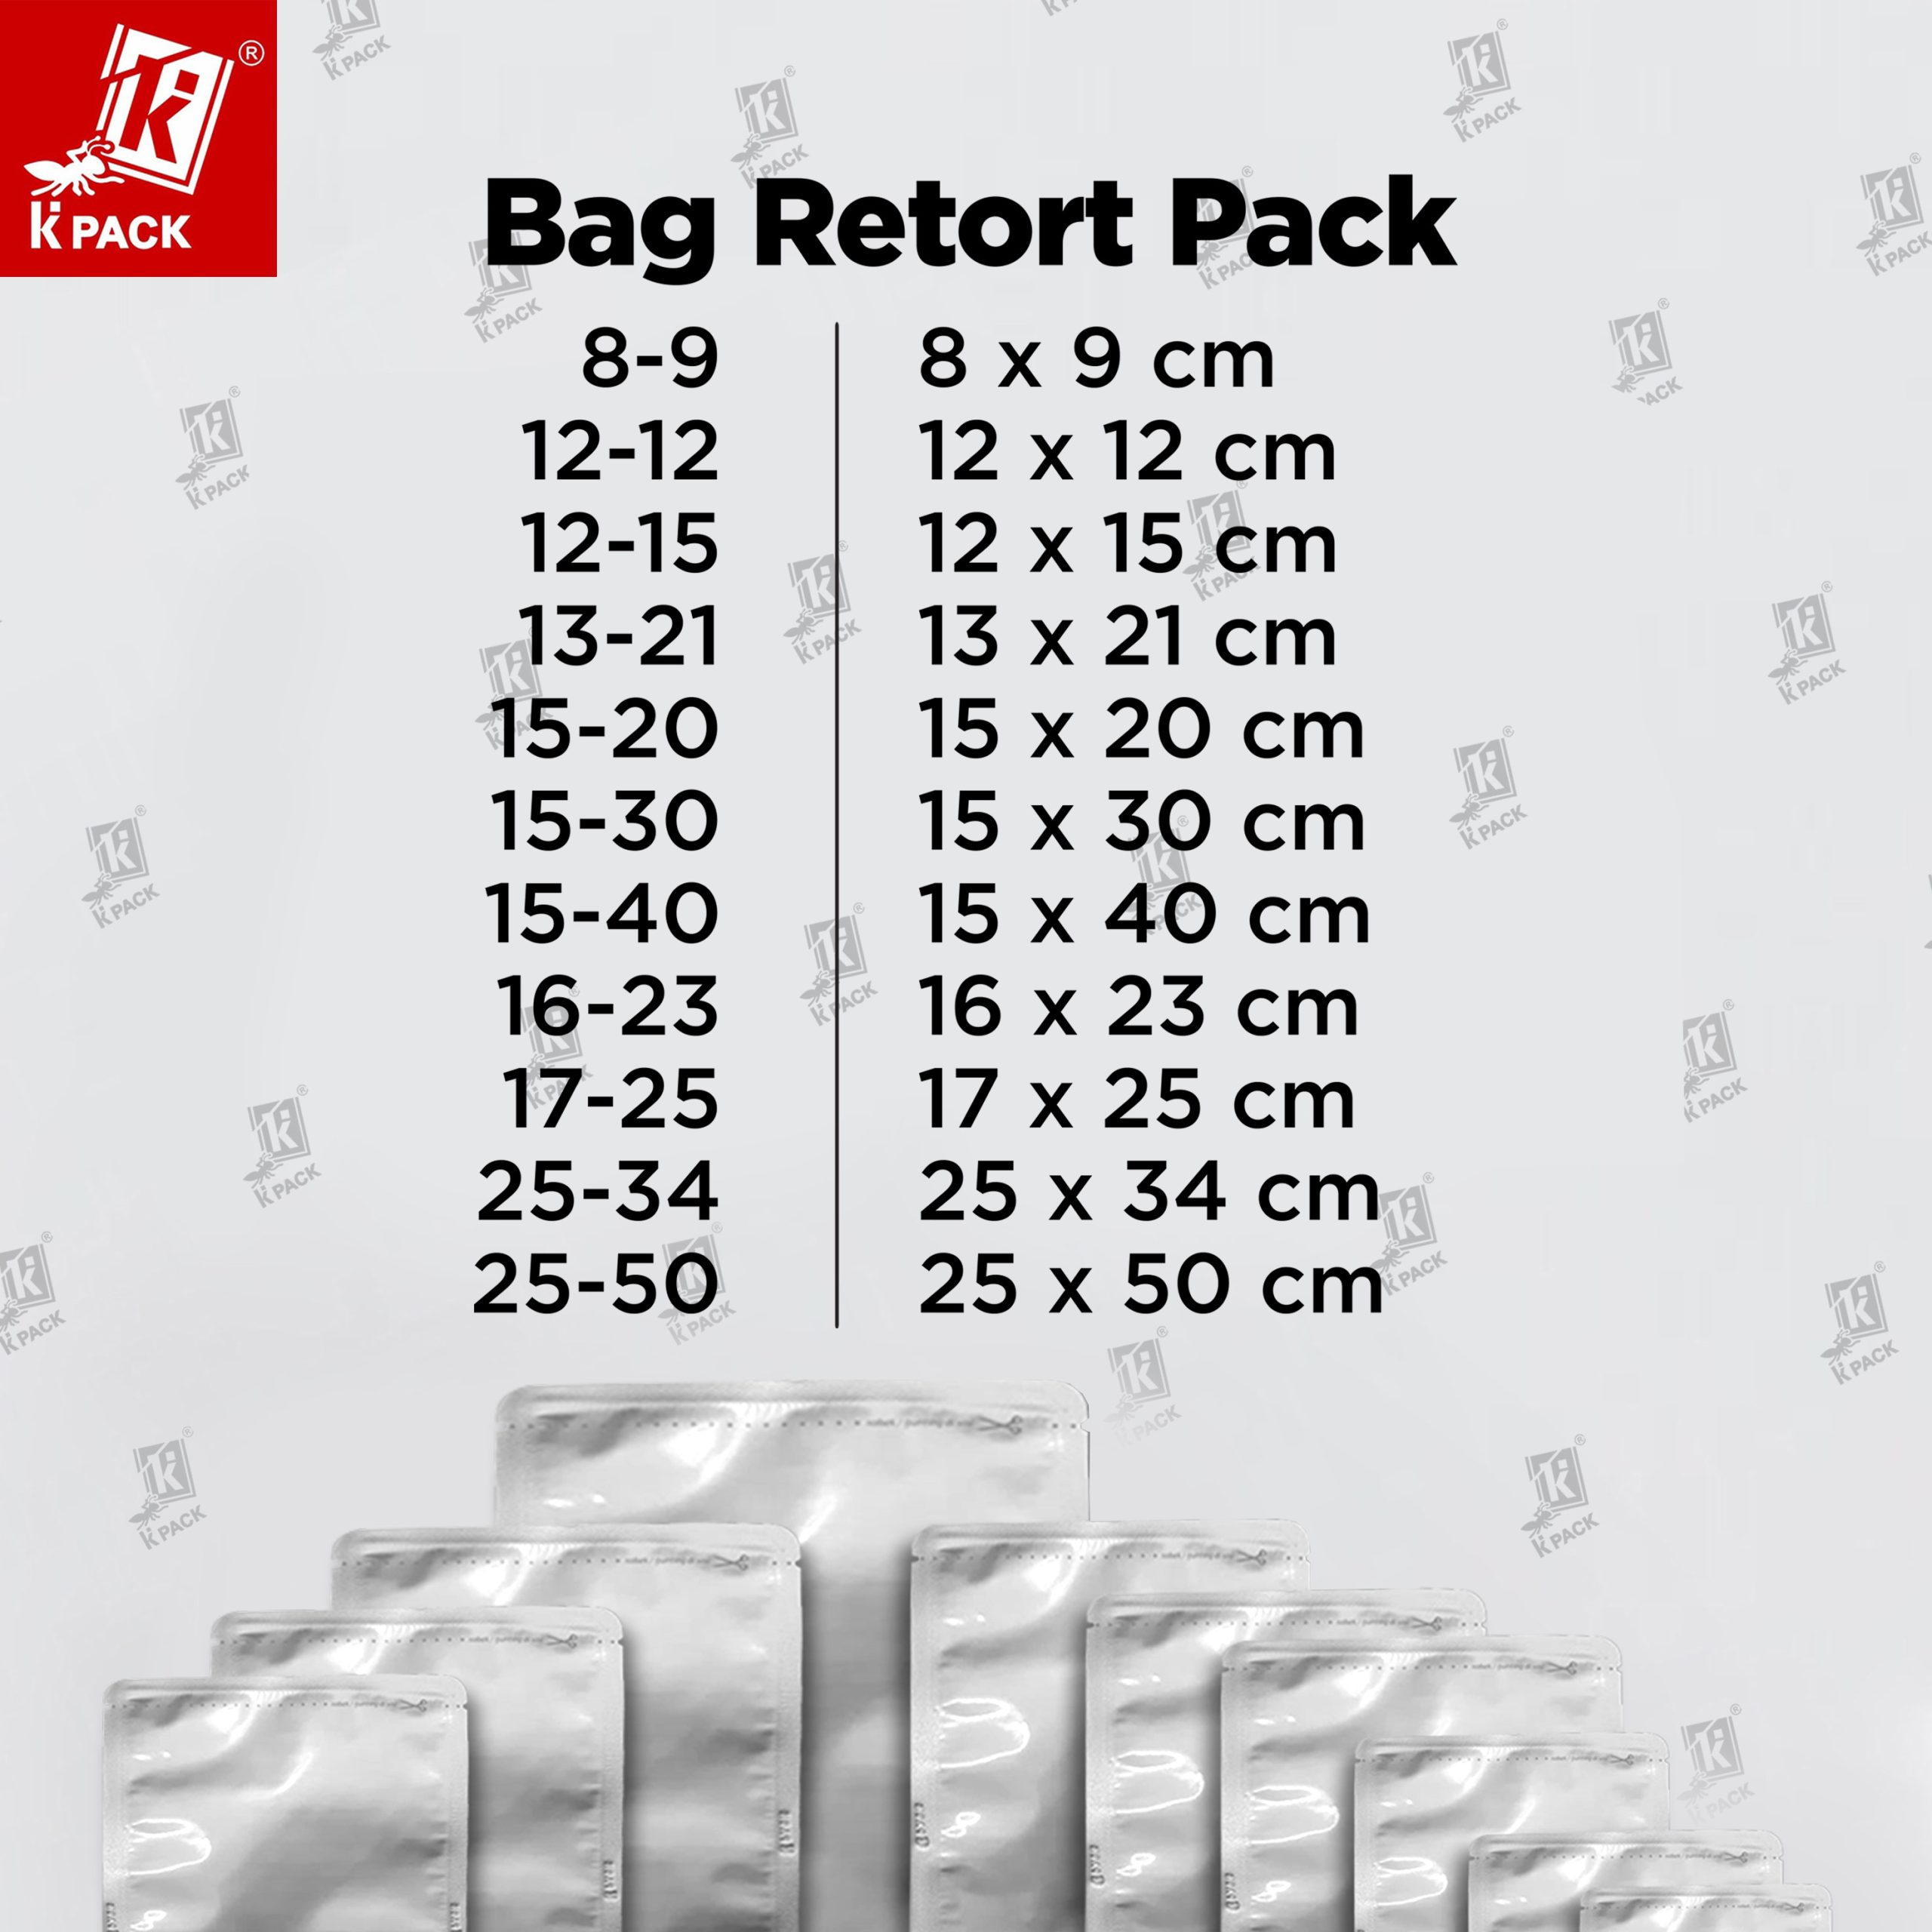 Bag Retort Pack ukuran 1.1